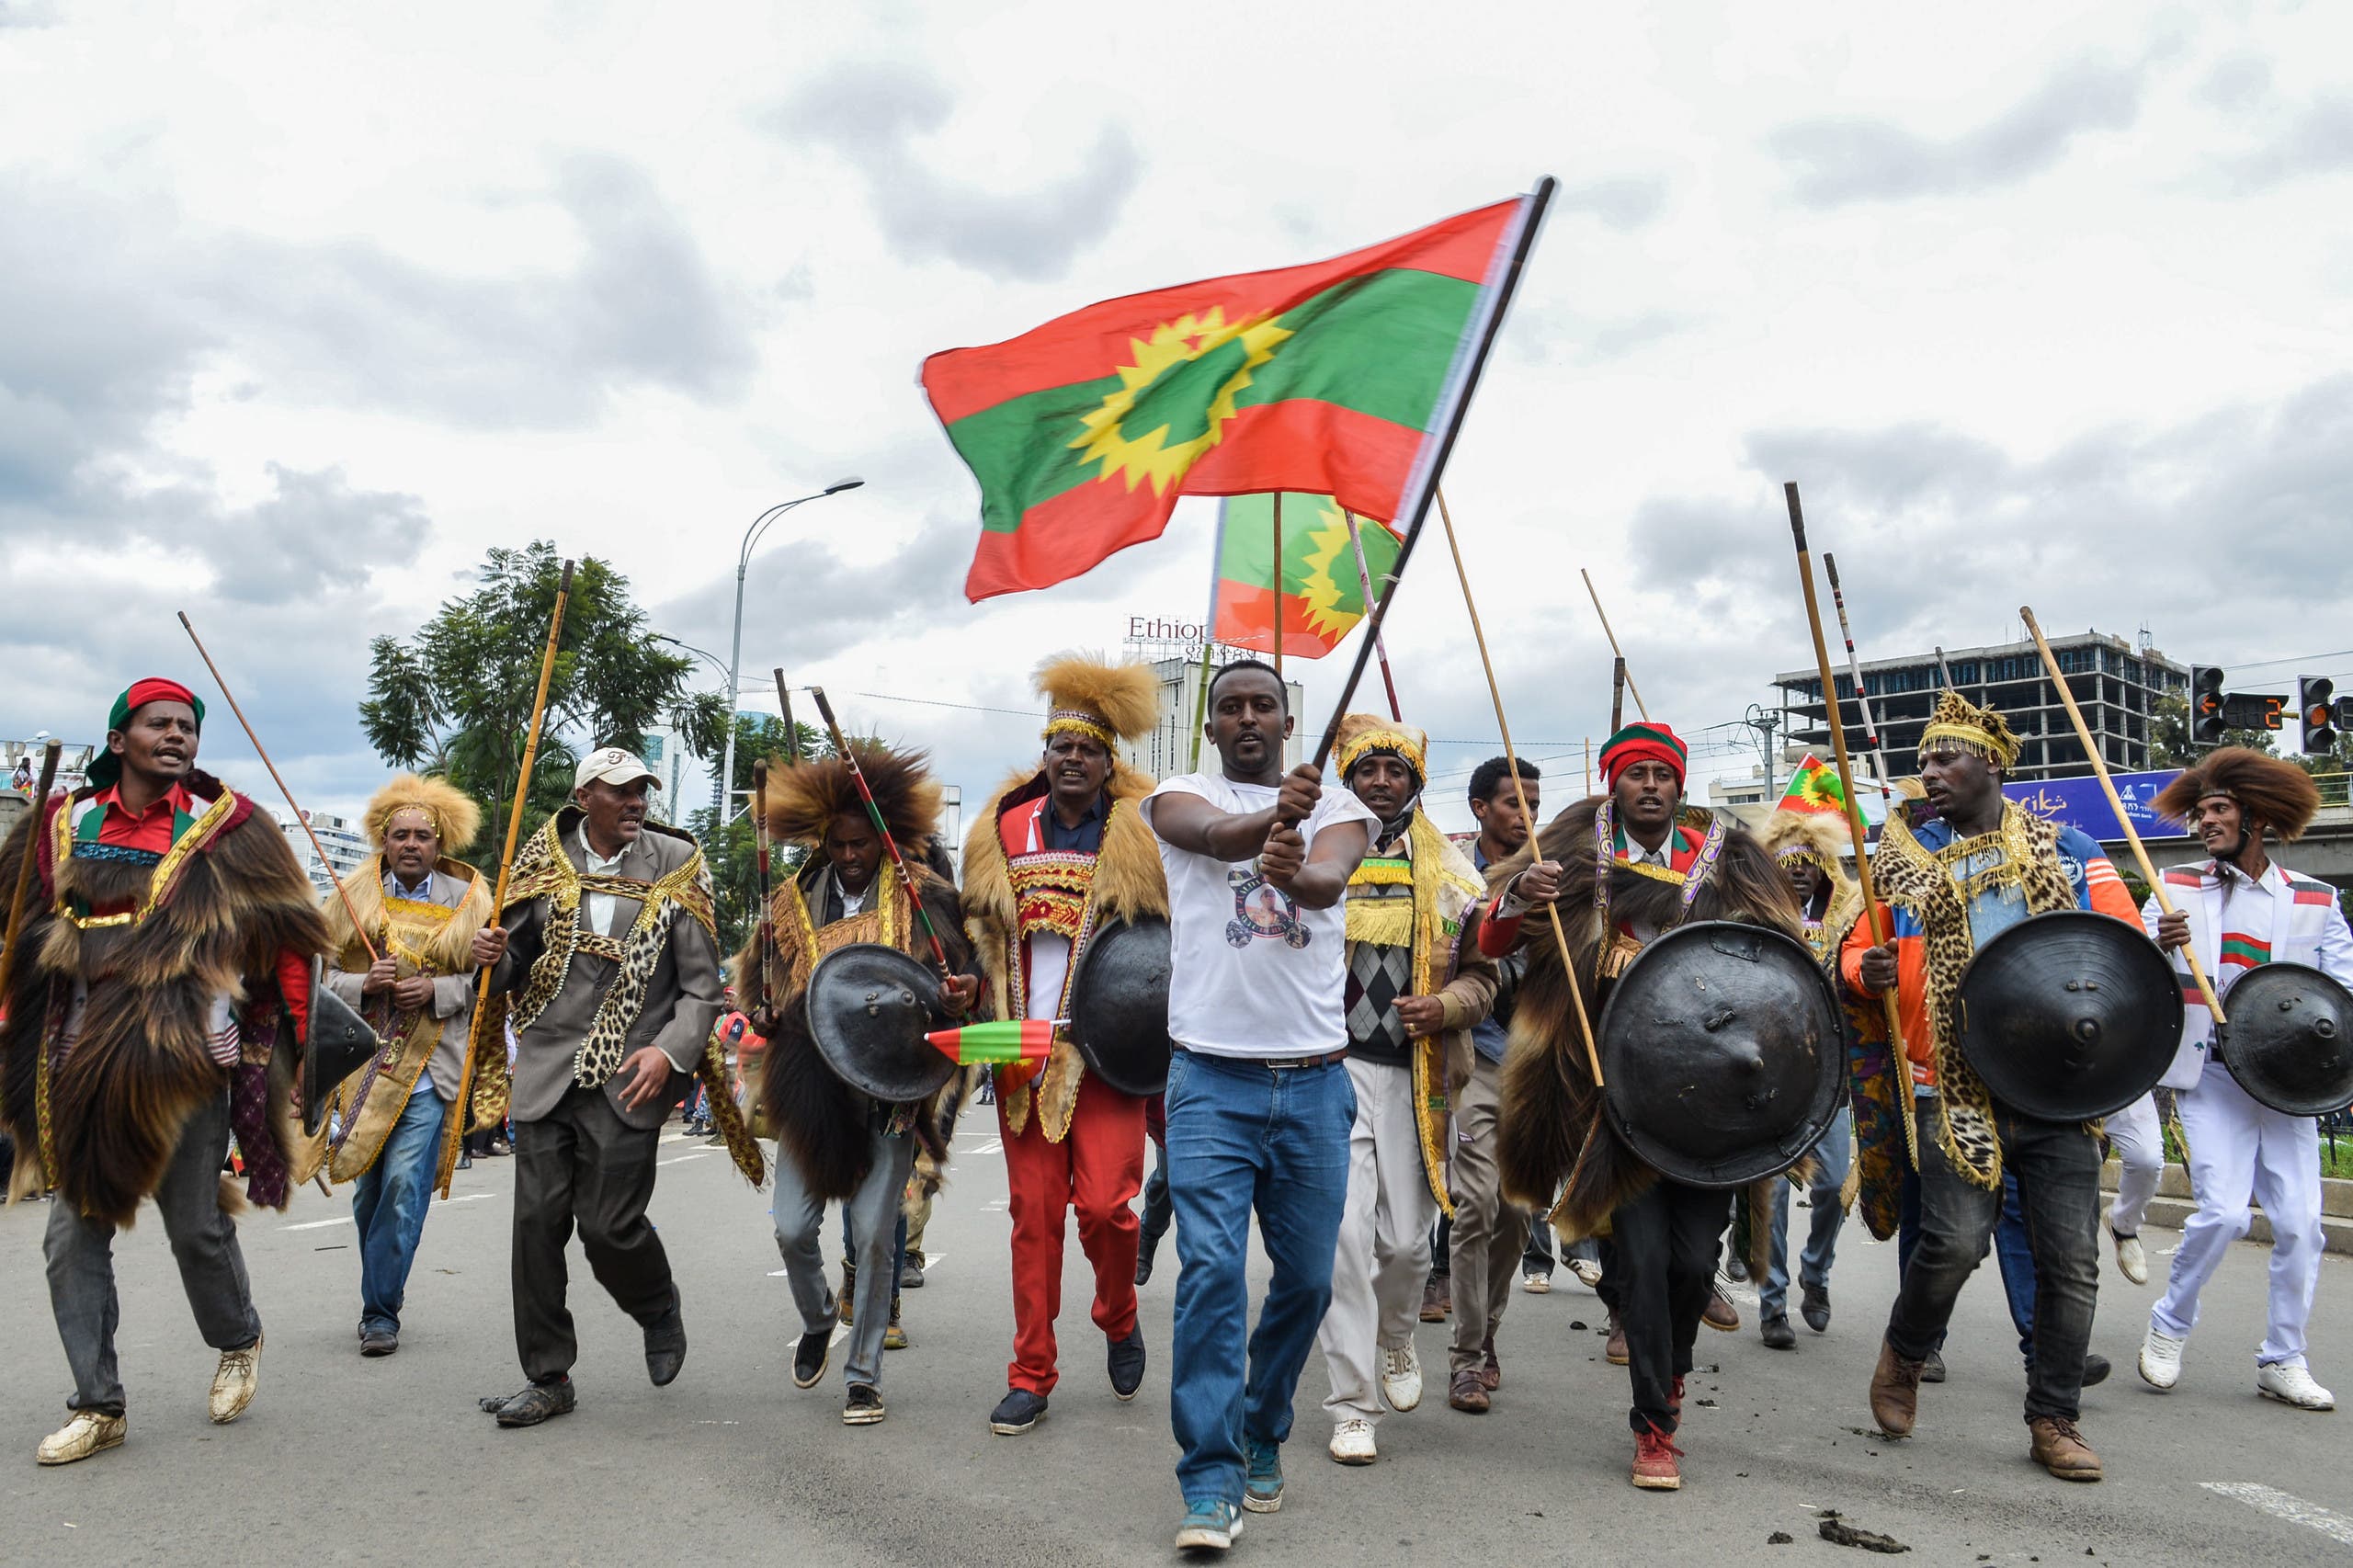 أنصار جبهة تحرير أورومو يحتفلون بعودة قائدهم من المنفى في سبتمبر 2018 في أديس أبابا